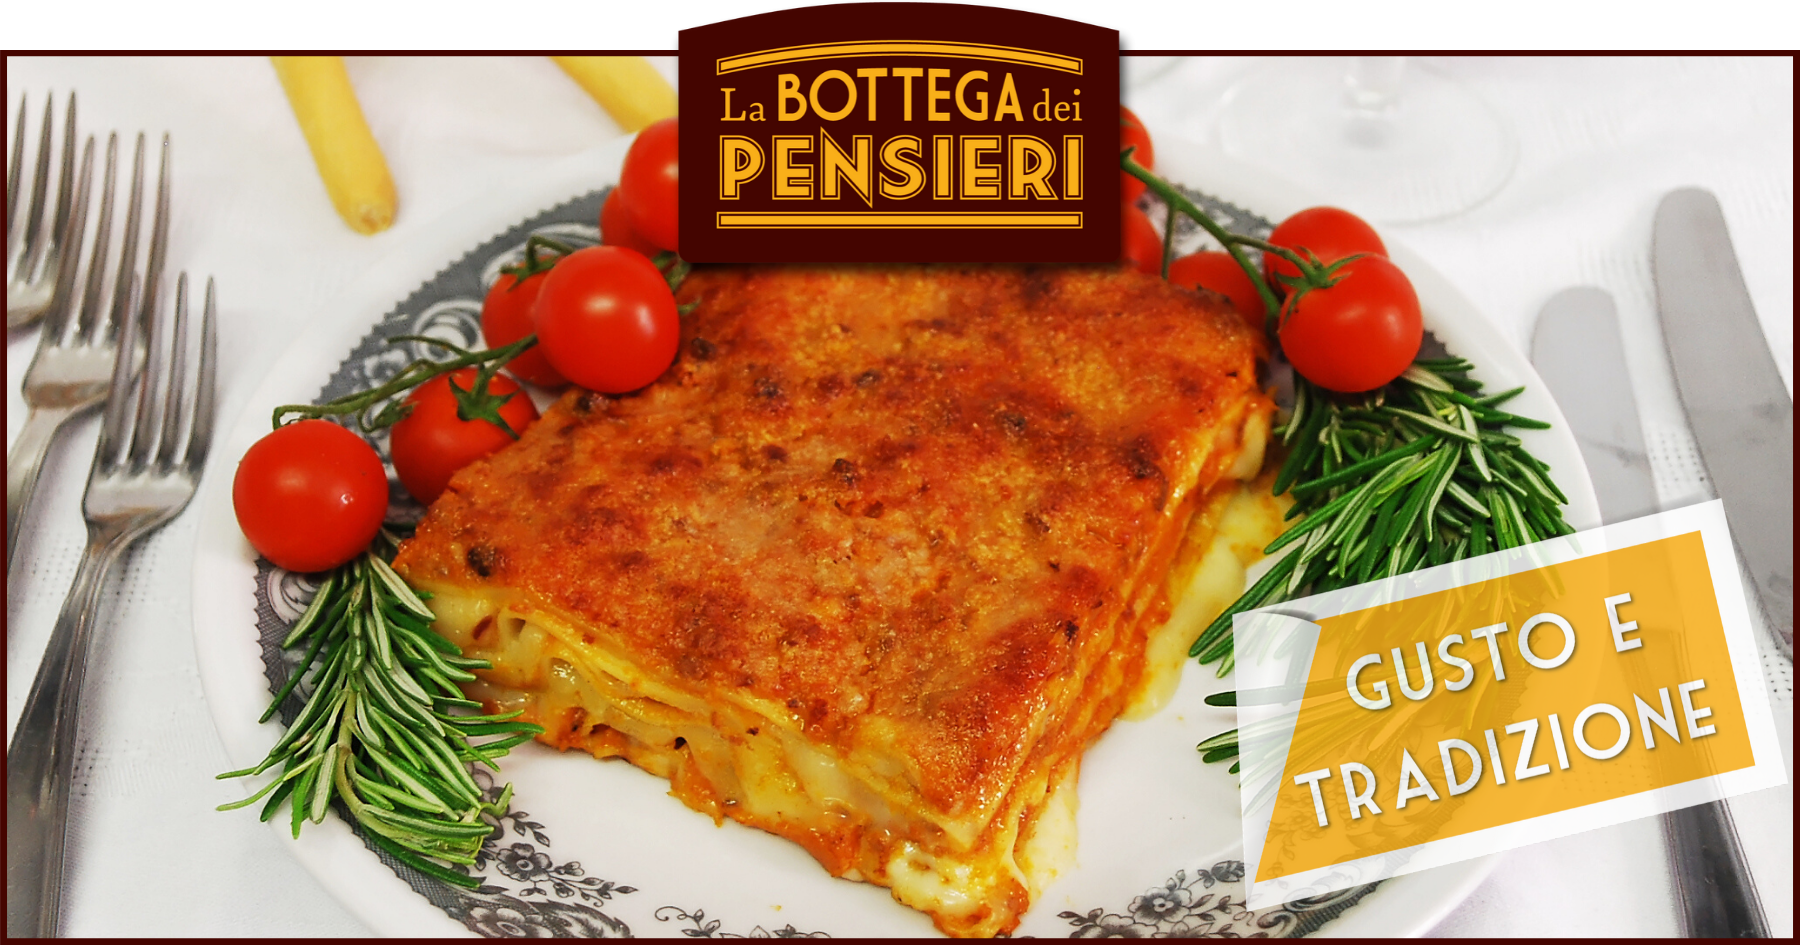 Piatto di lasagne alla bolognese